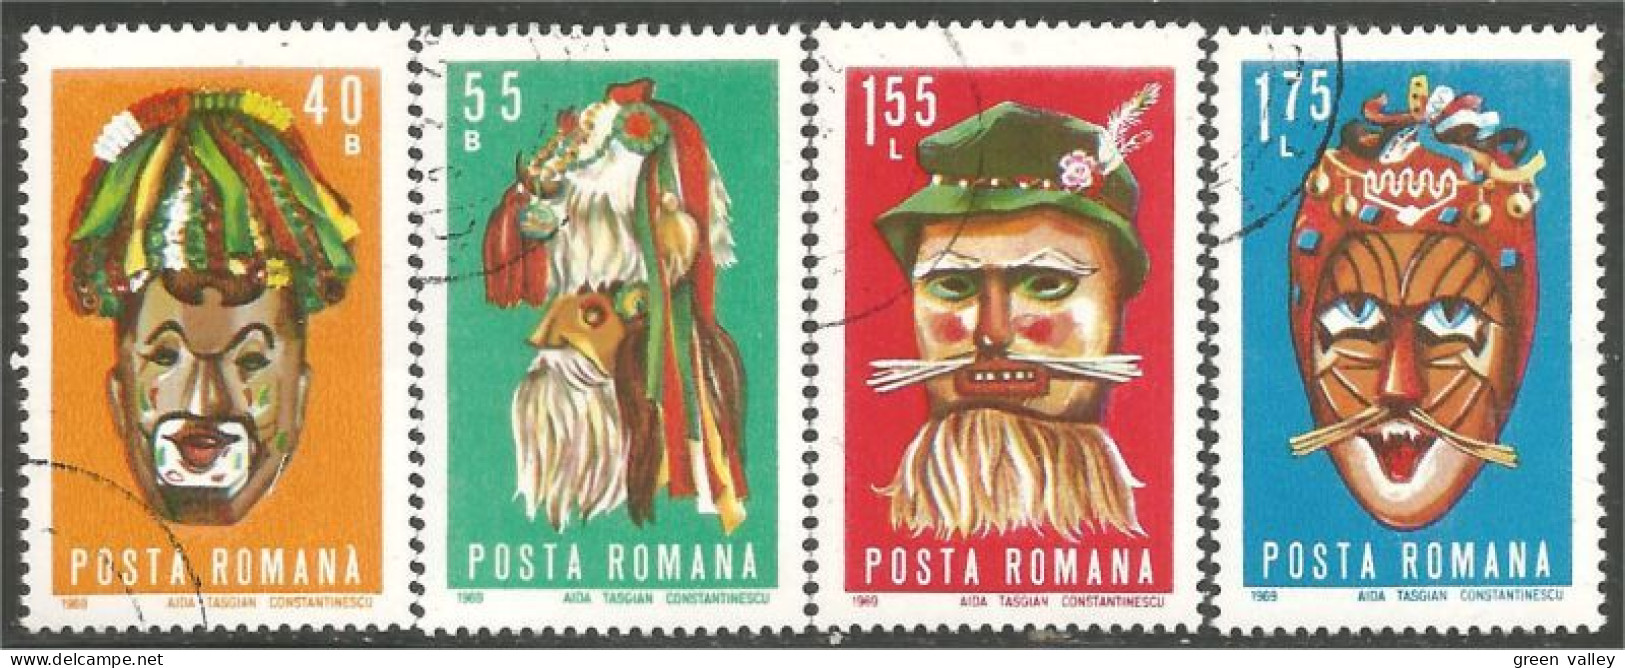 766 Roumanie Masks Masques Clown (ROU-311a) - Zirkus